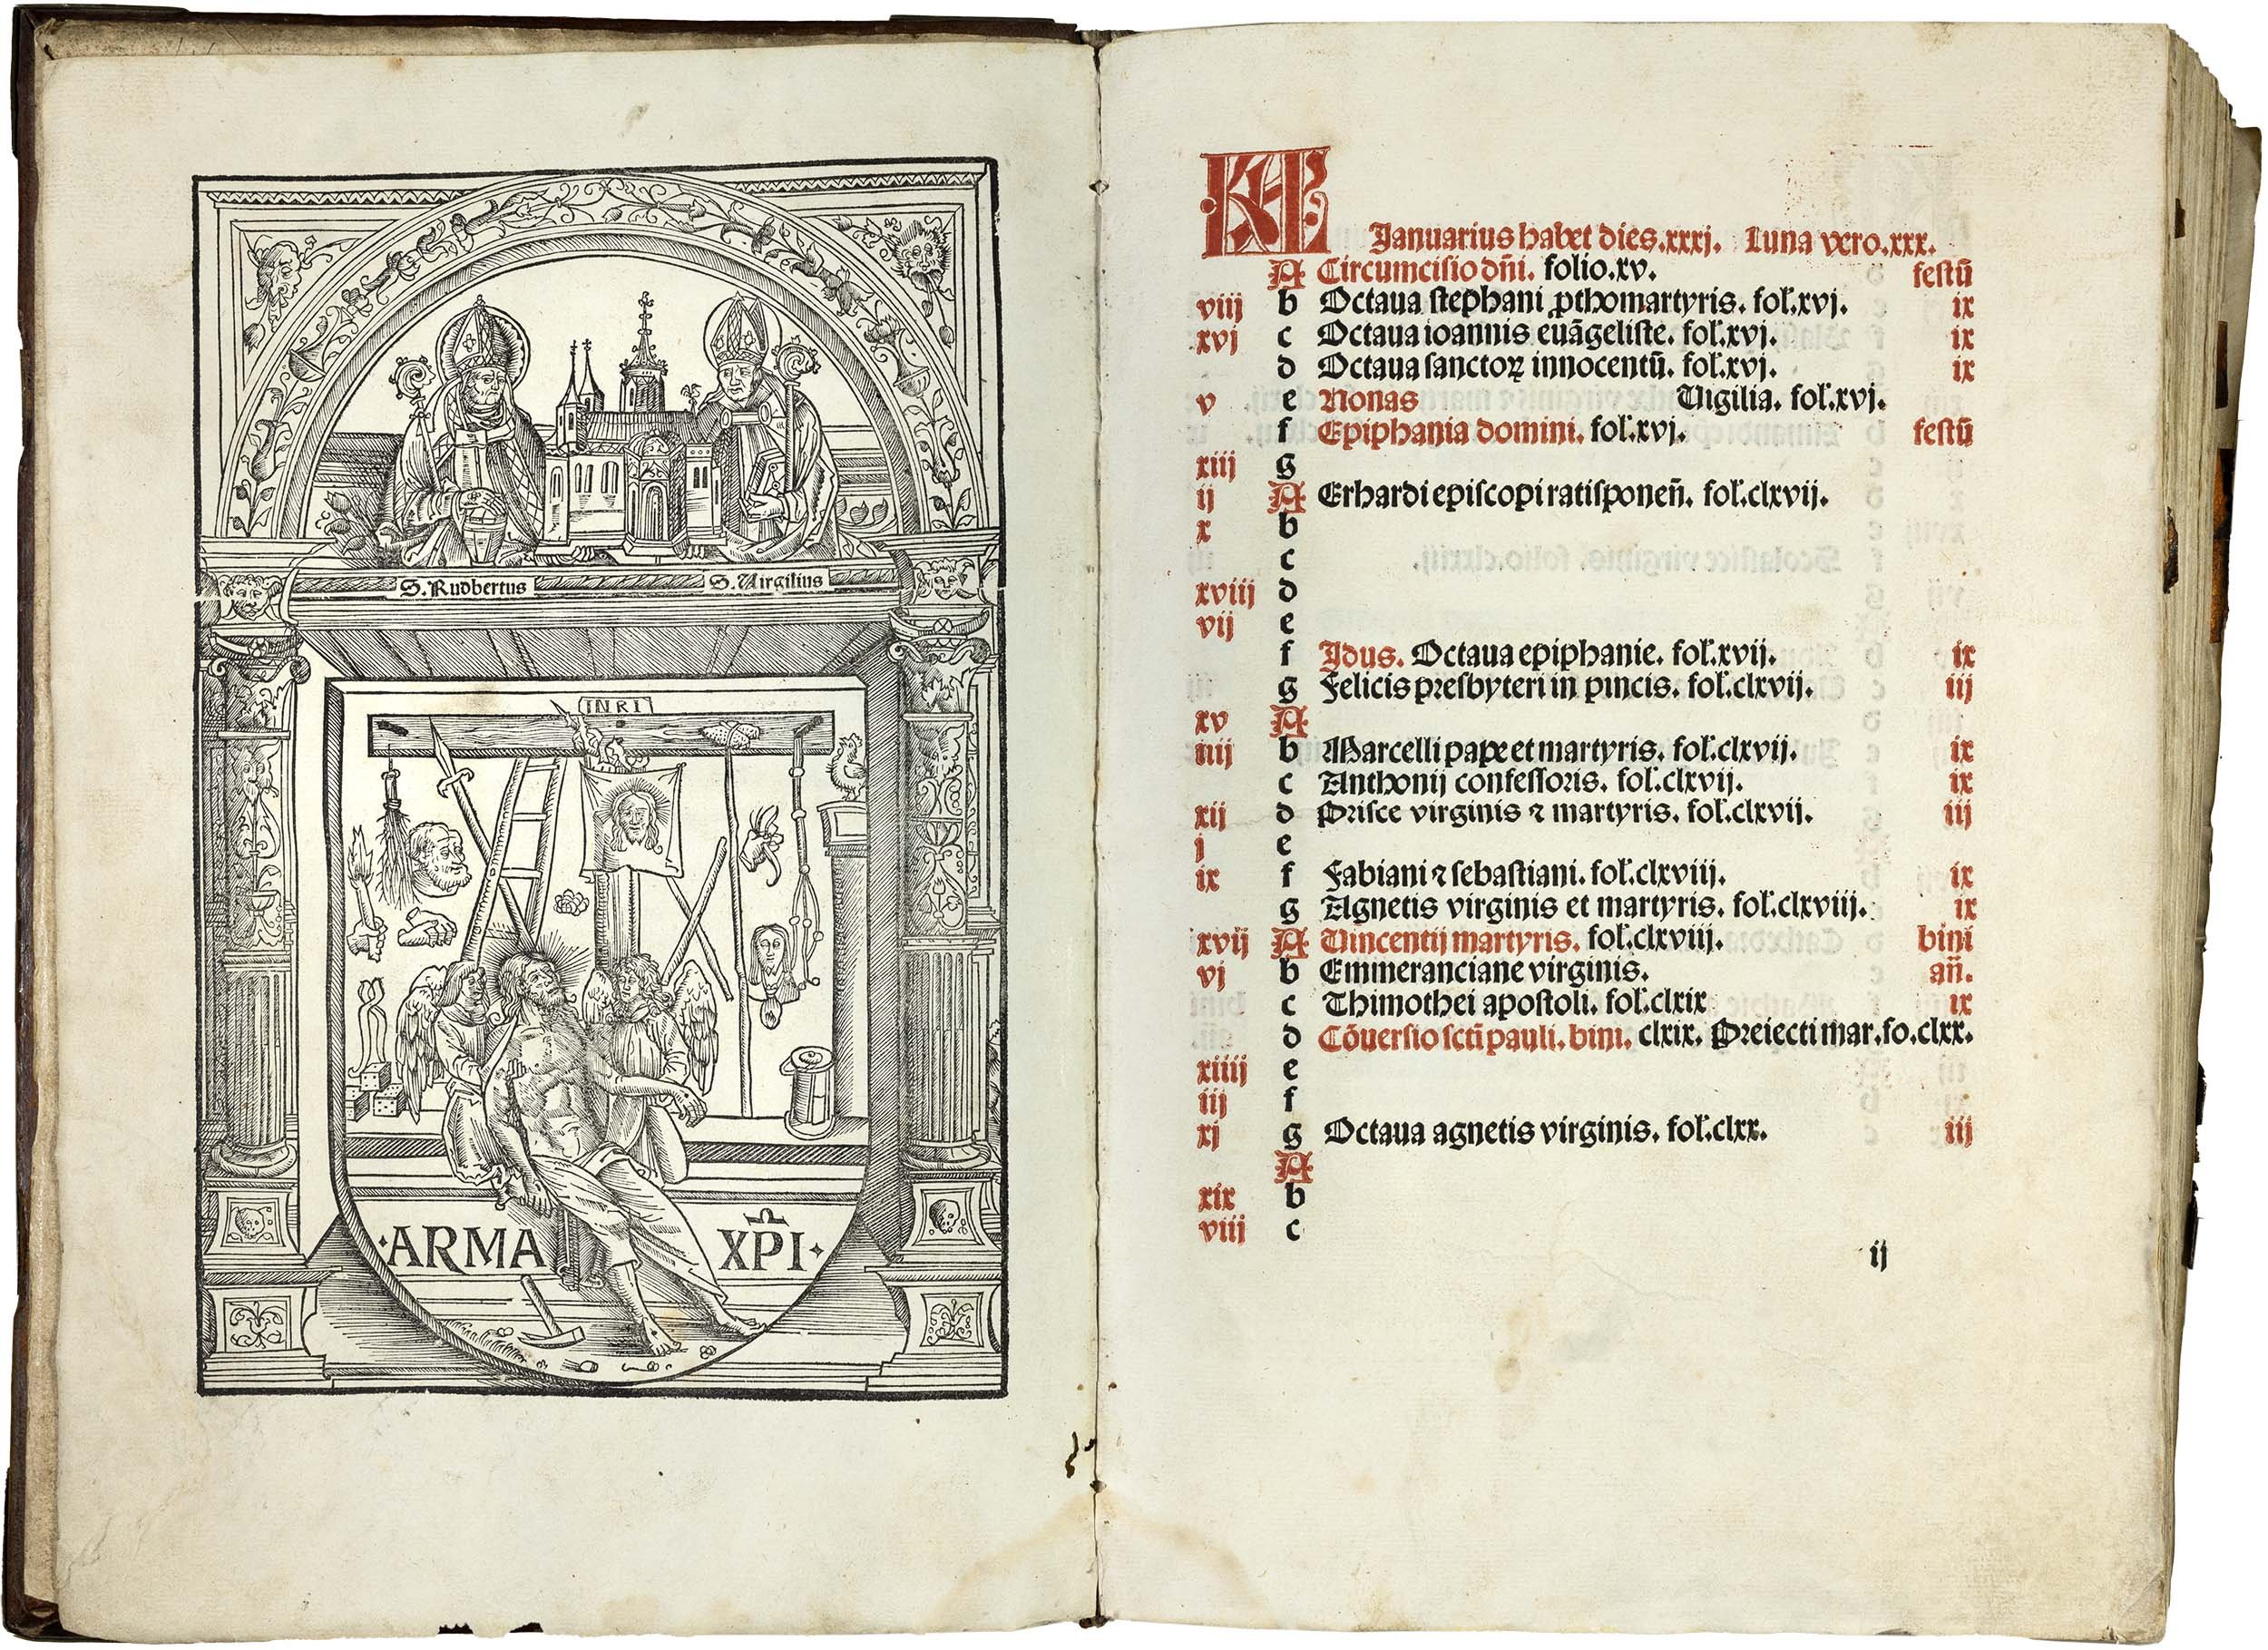 Missale-Saltzeburgense-lucas-cranach-der-aeltere-elder-crucifixion-missel-illuminated-woodcut-1506-2.jpg